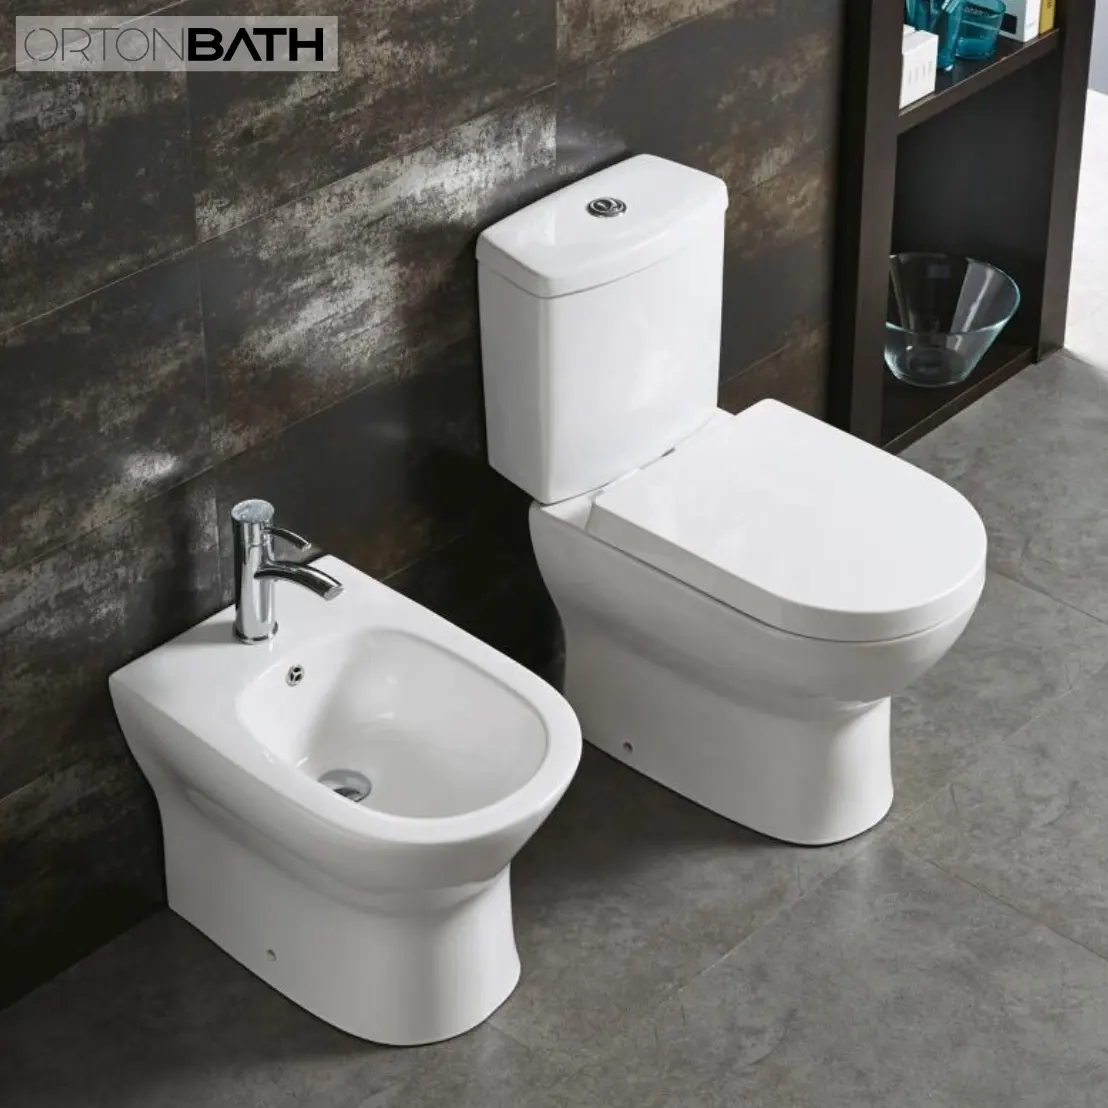 ORTON BATH China Europa Inodoros kompakte Toilette & Zubehör China hochwertige Pisse WC Toiletten schüssel mit pp Sitz bezug